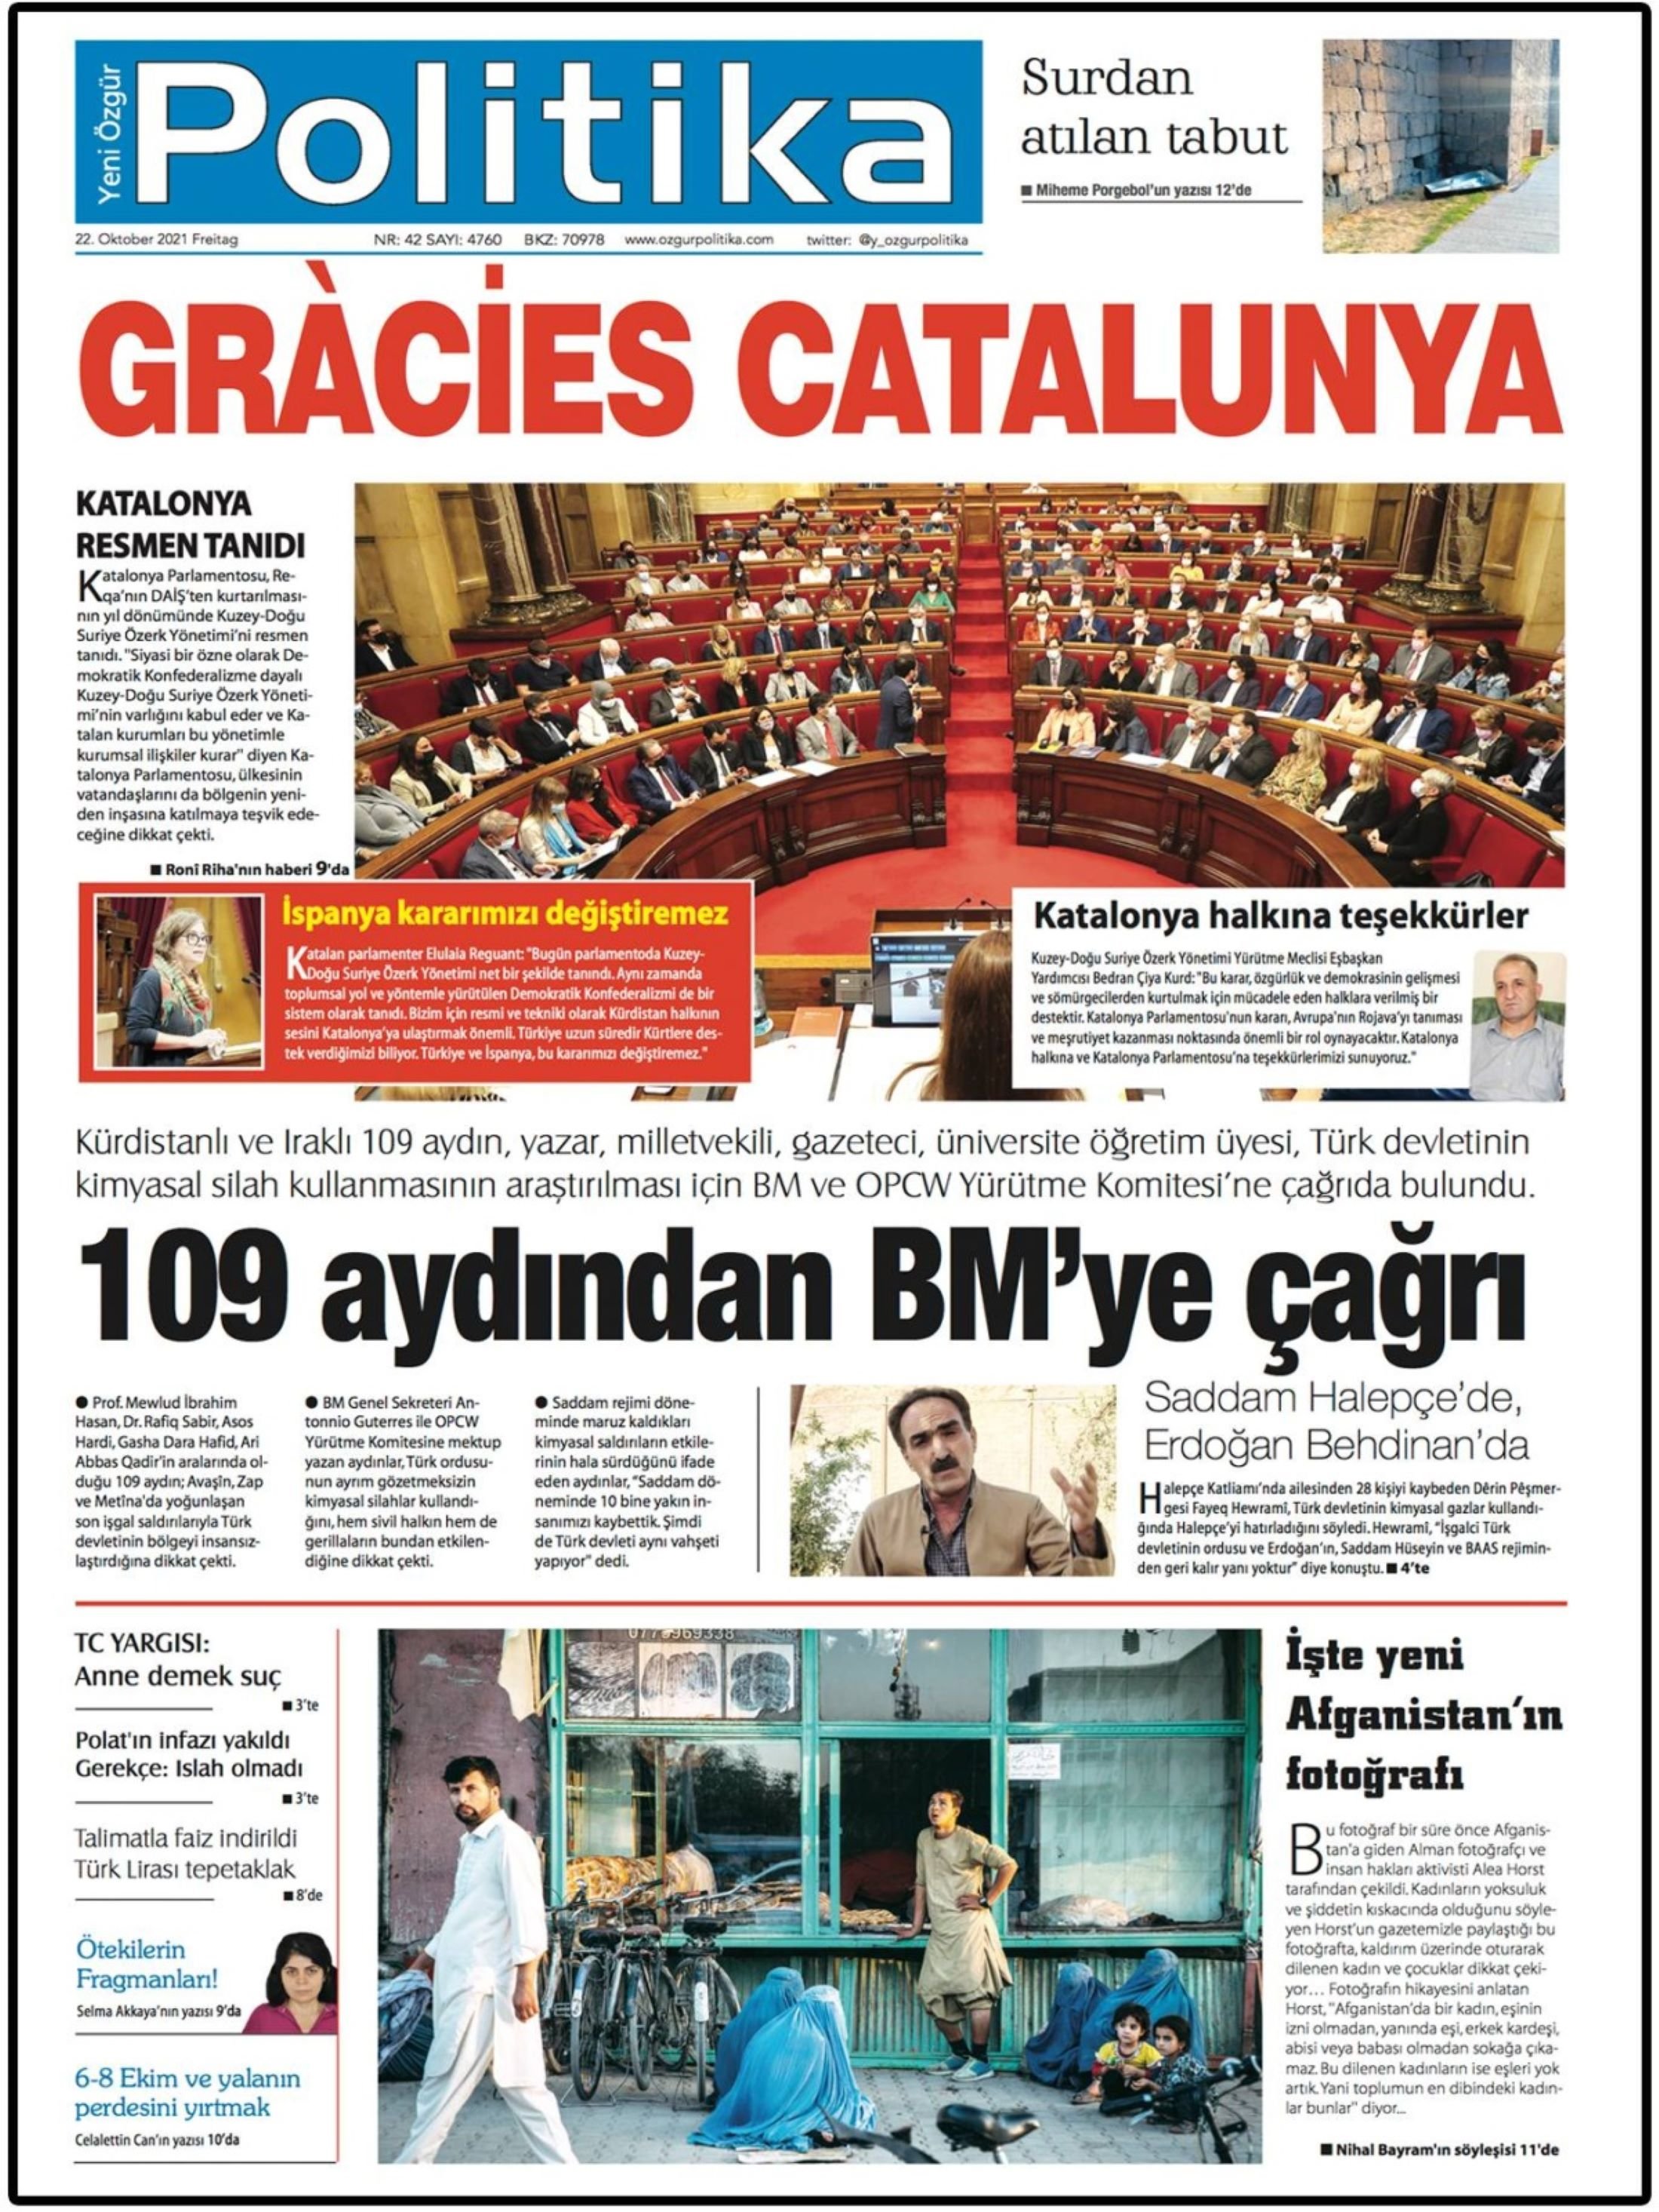 La gratitud de un partido kurdo a Catalunya con una portada de diario en catalán